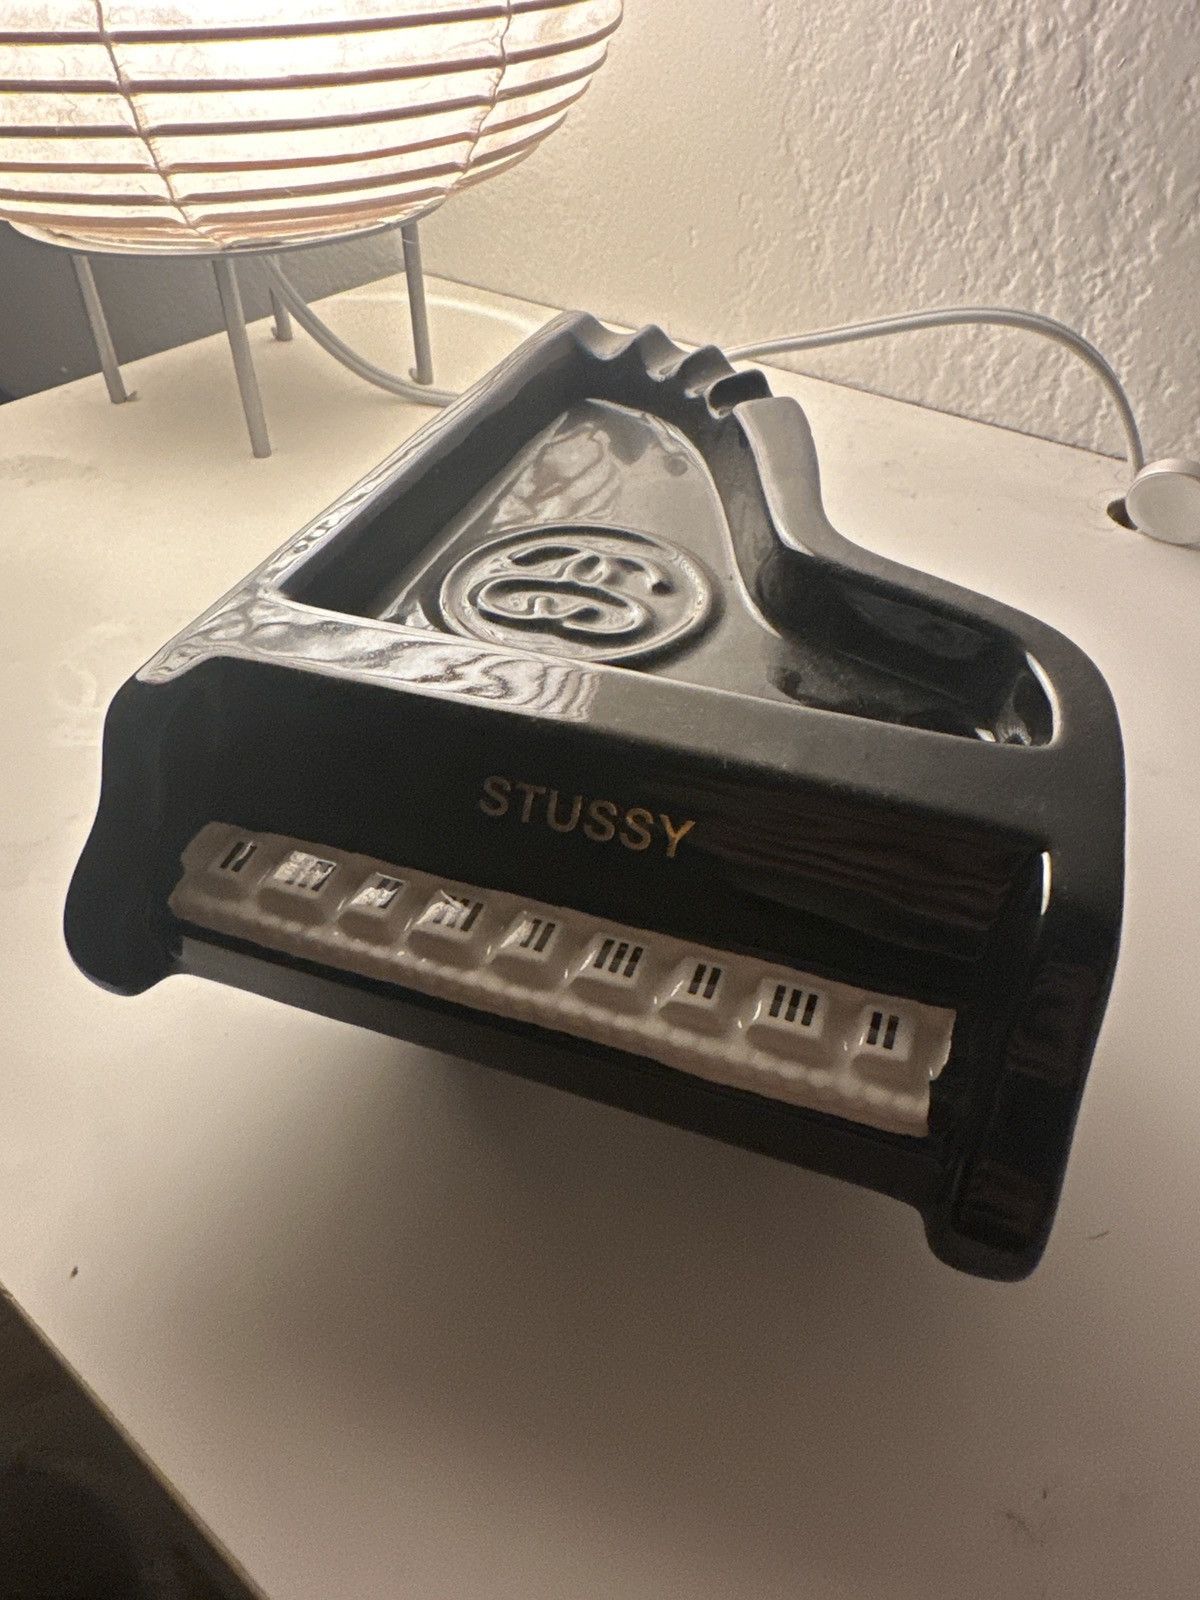 Stussy STUSSY PIANO ASHTRAY (VERY RARE) | Grailed